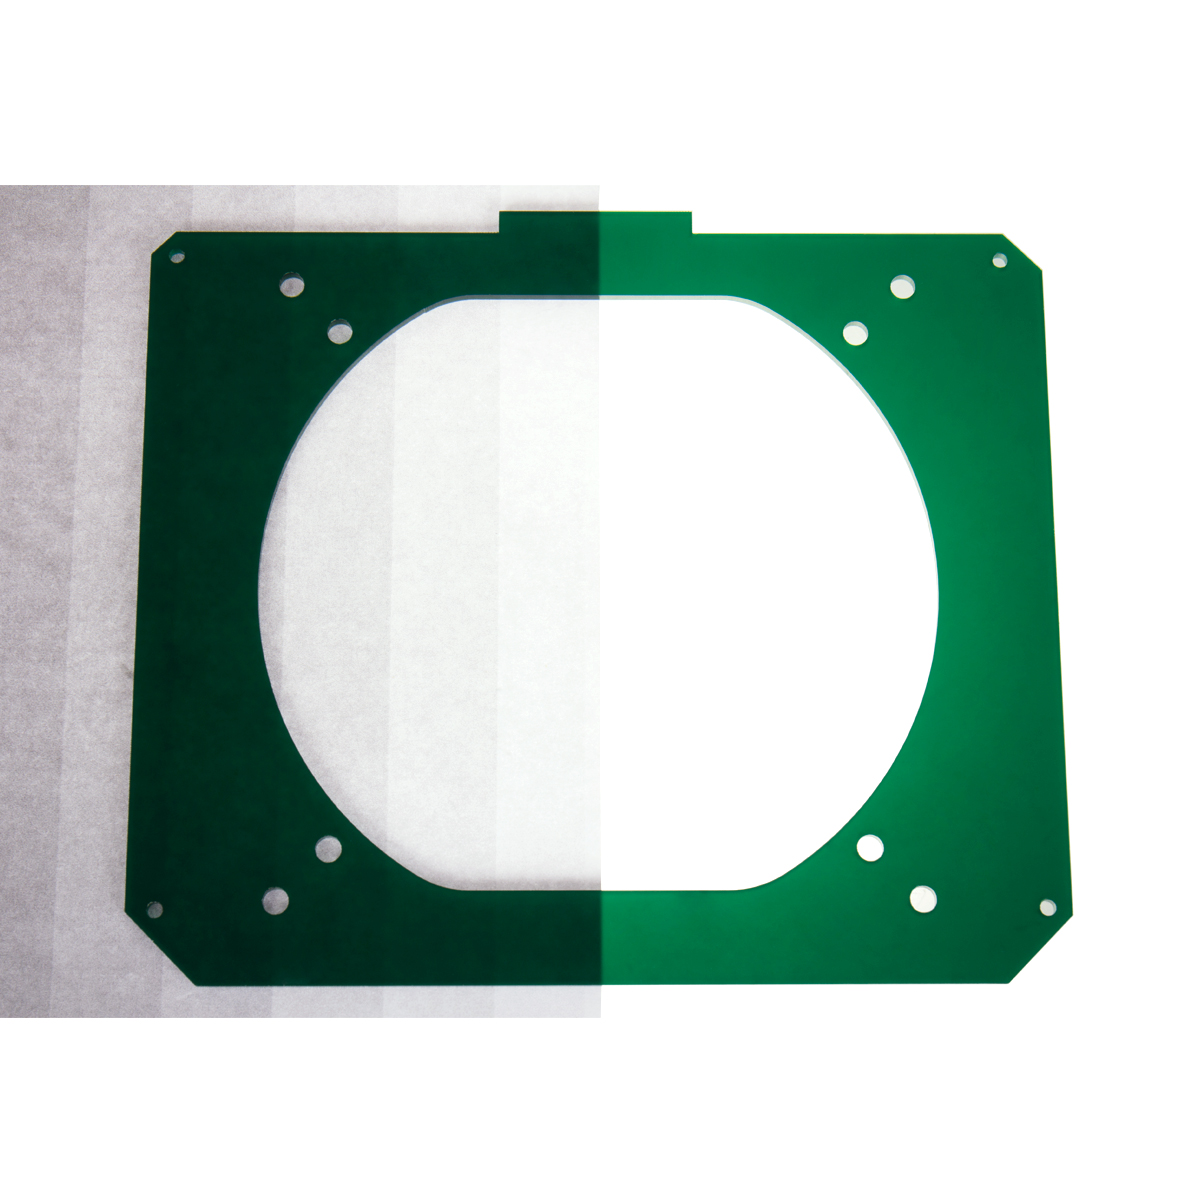 Lazer3D - Lazer3D LZ7 Left Panel - Emerald Green Open